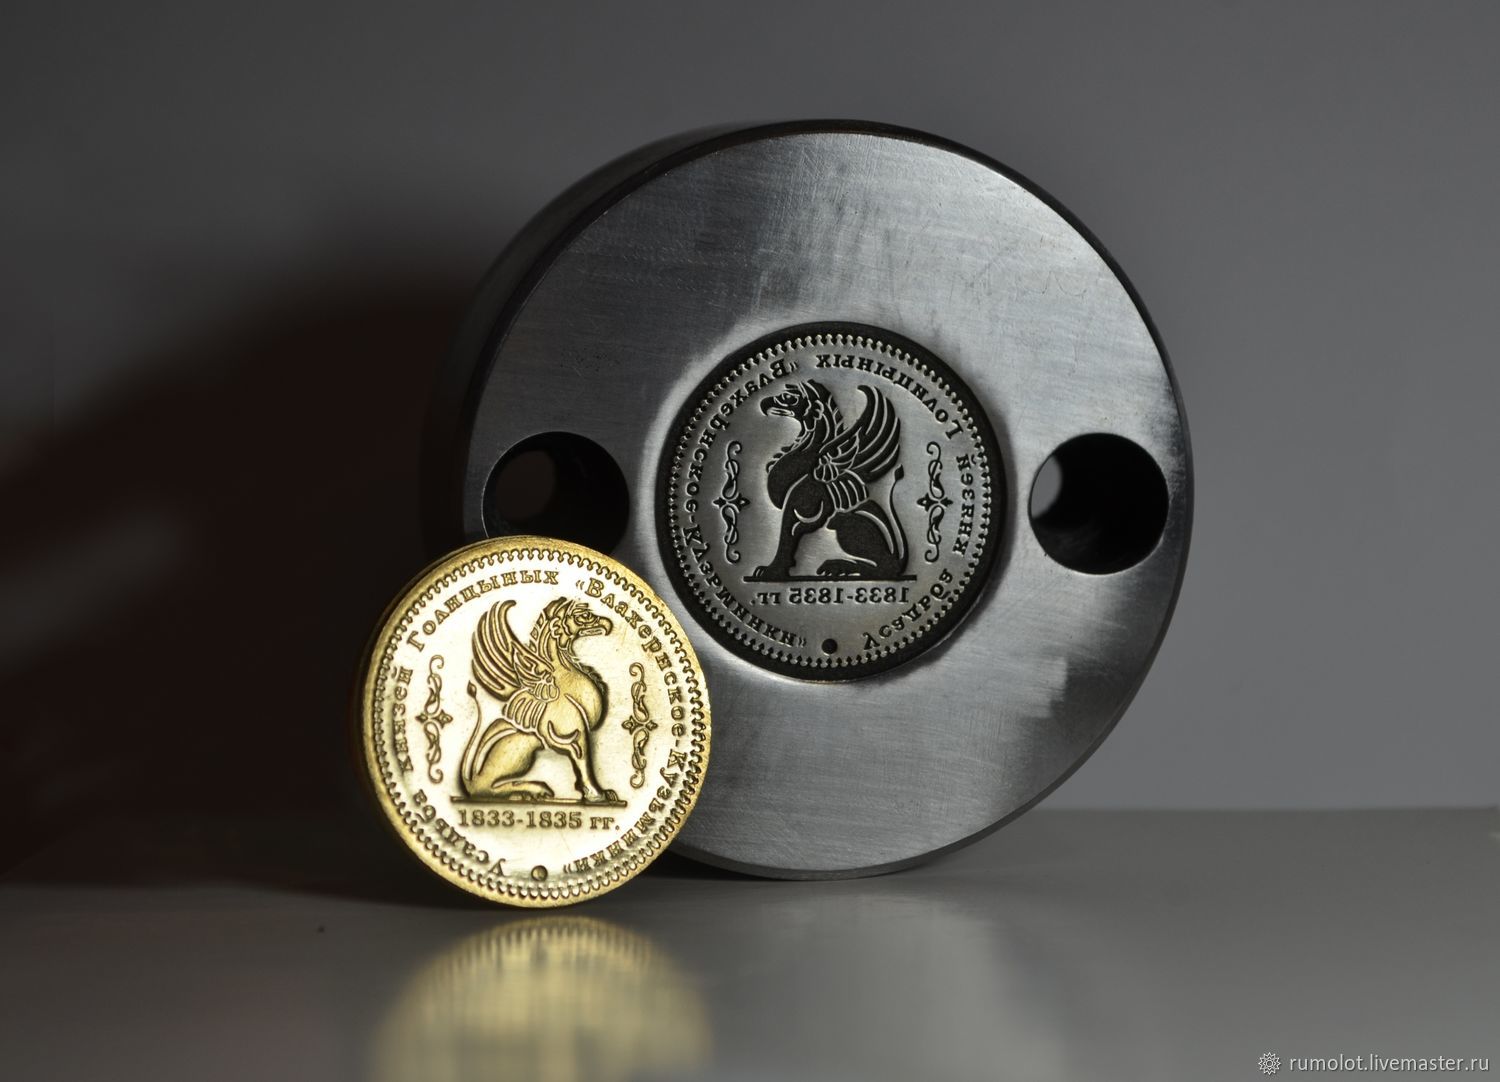 Профессиональный гидравлический пресс — Монетный аттракцион — бизнес на чеканке монет, Украина